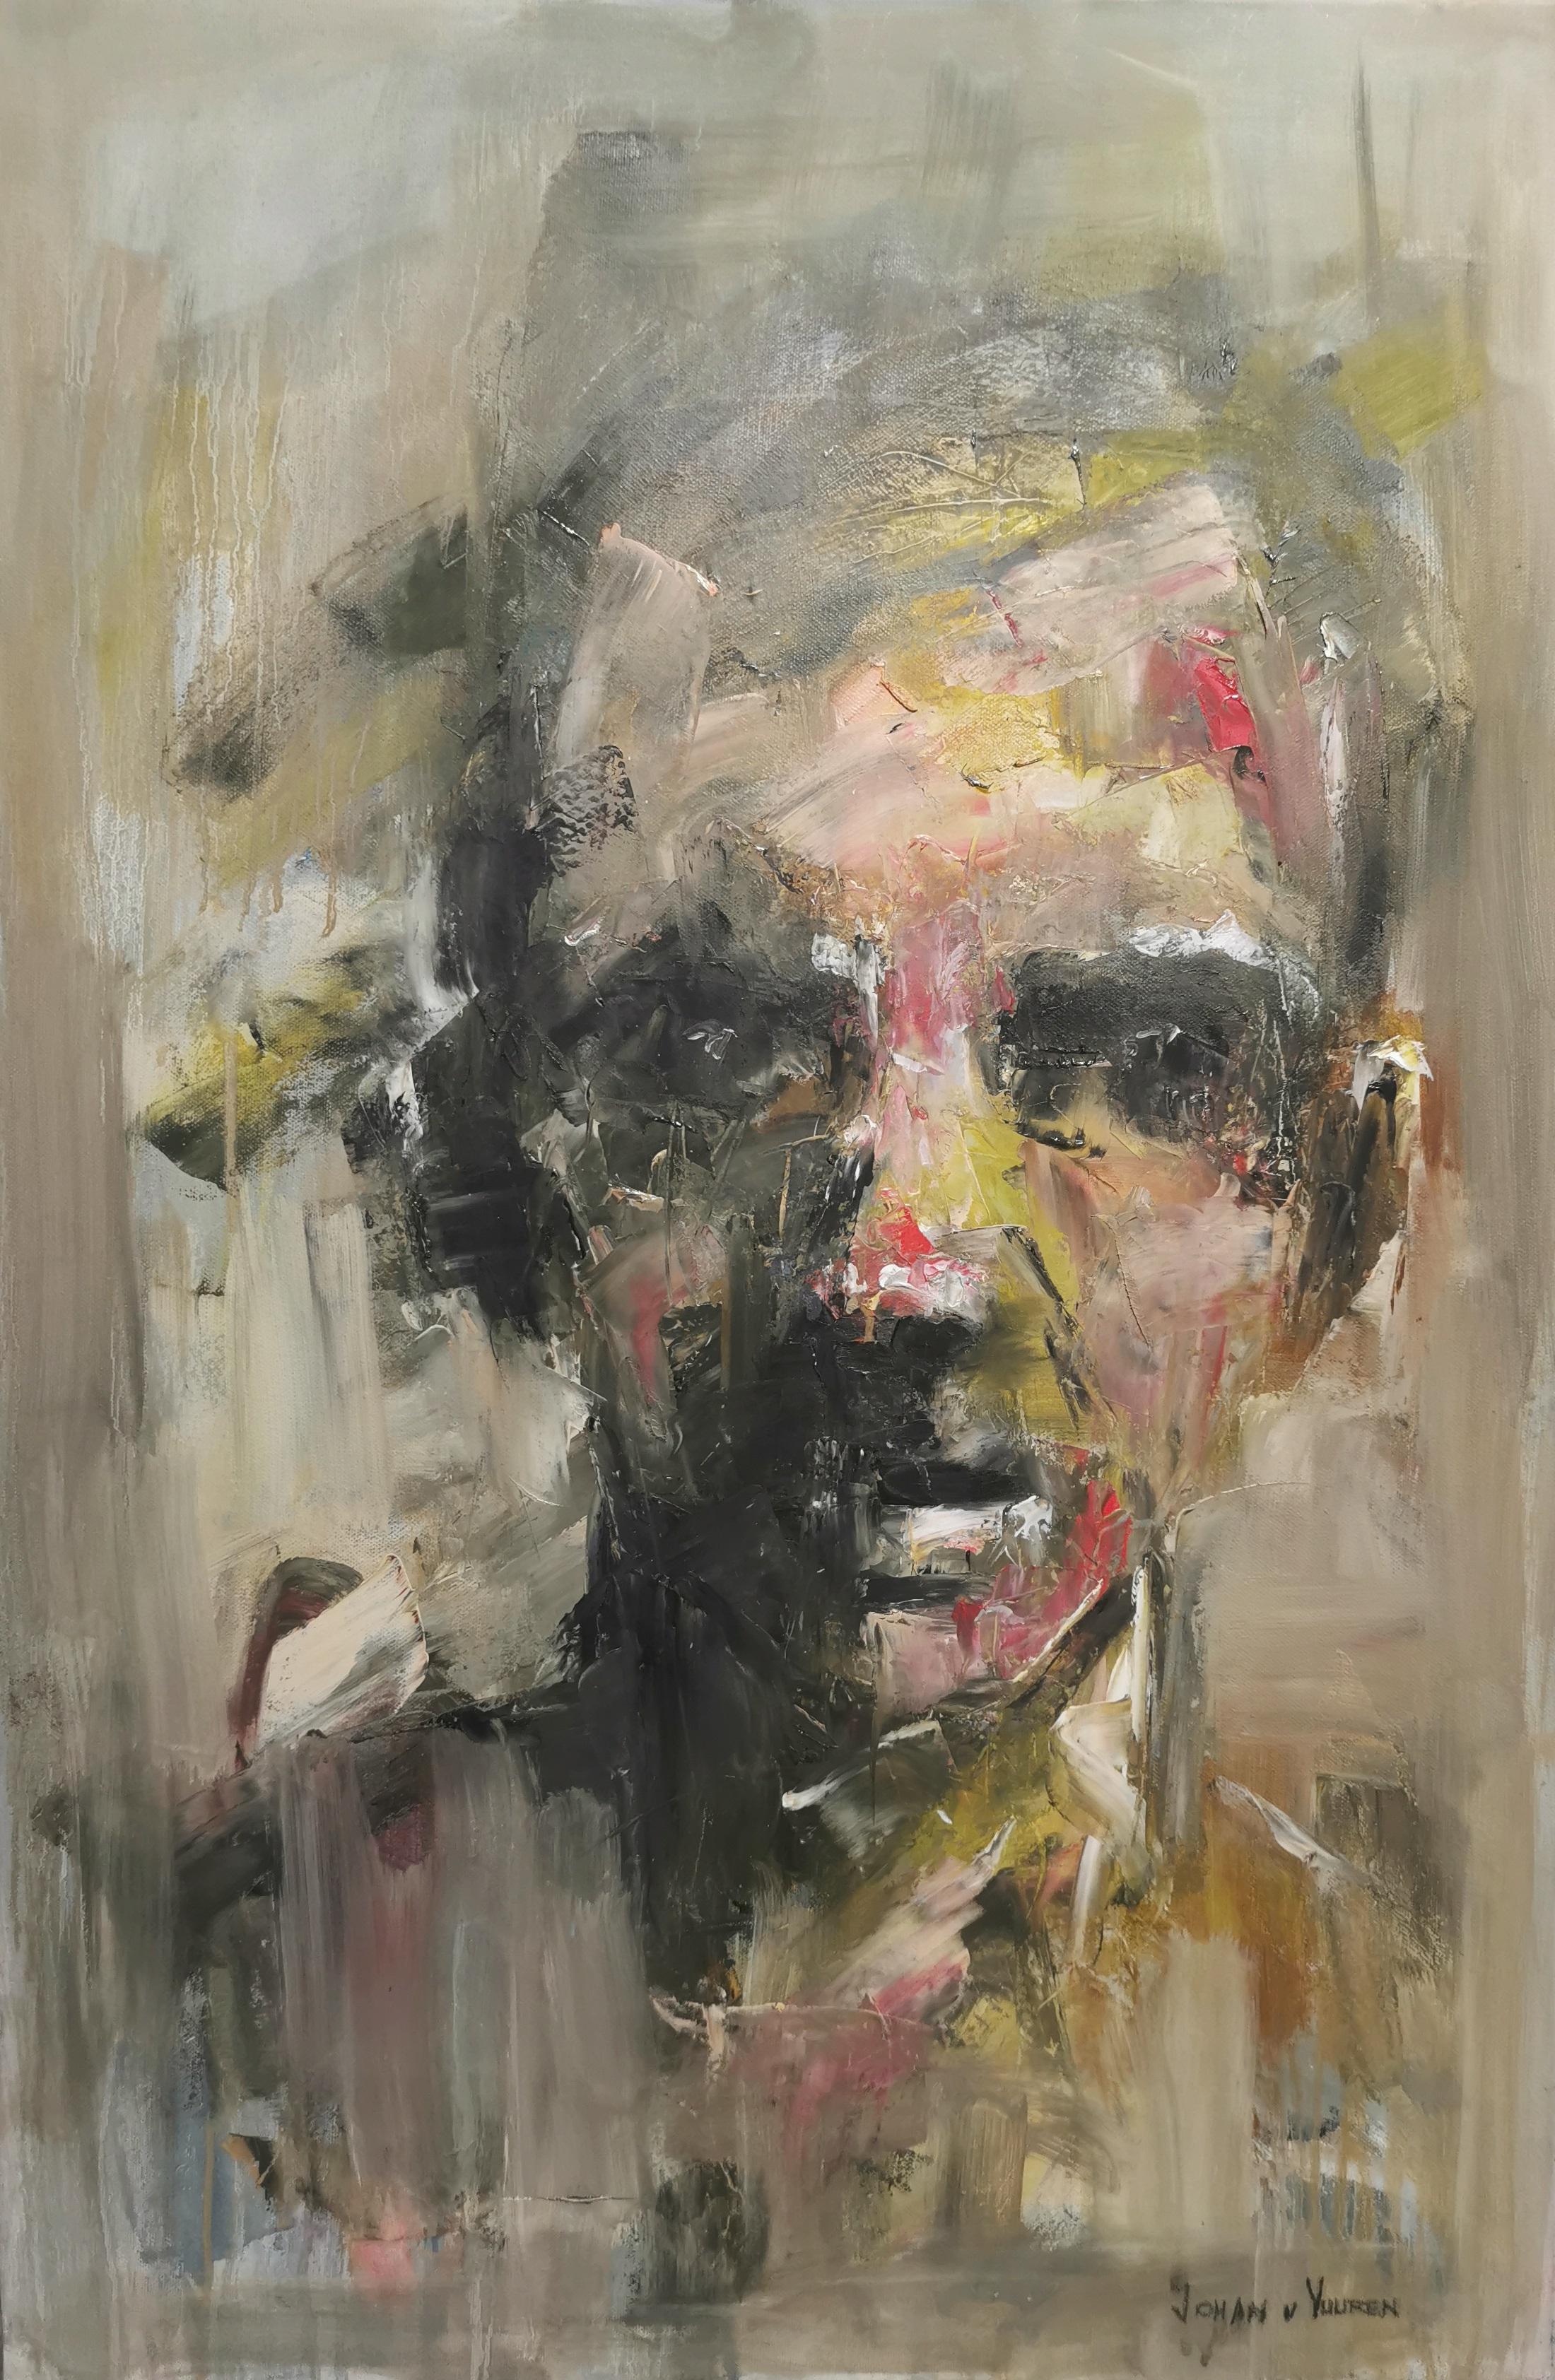 Portrait gestuel abstrait expressionniste abstrait, huile sur toile 